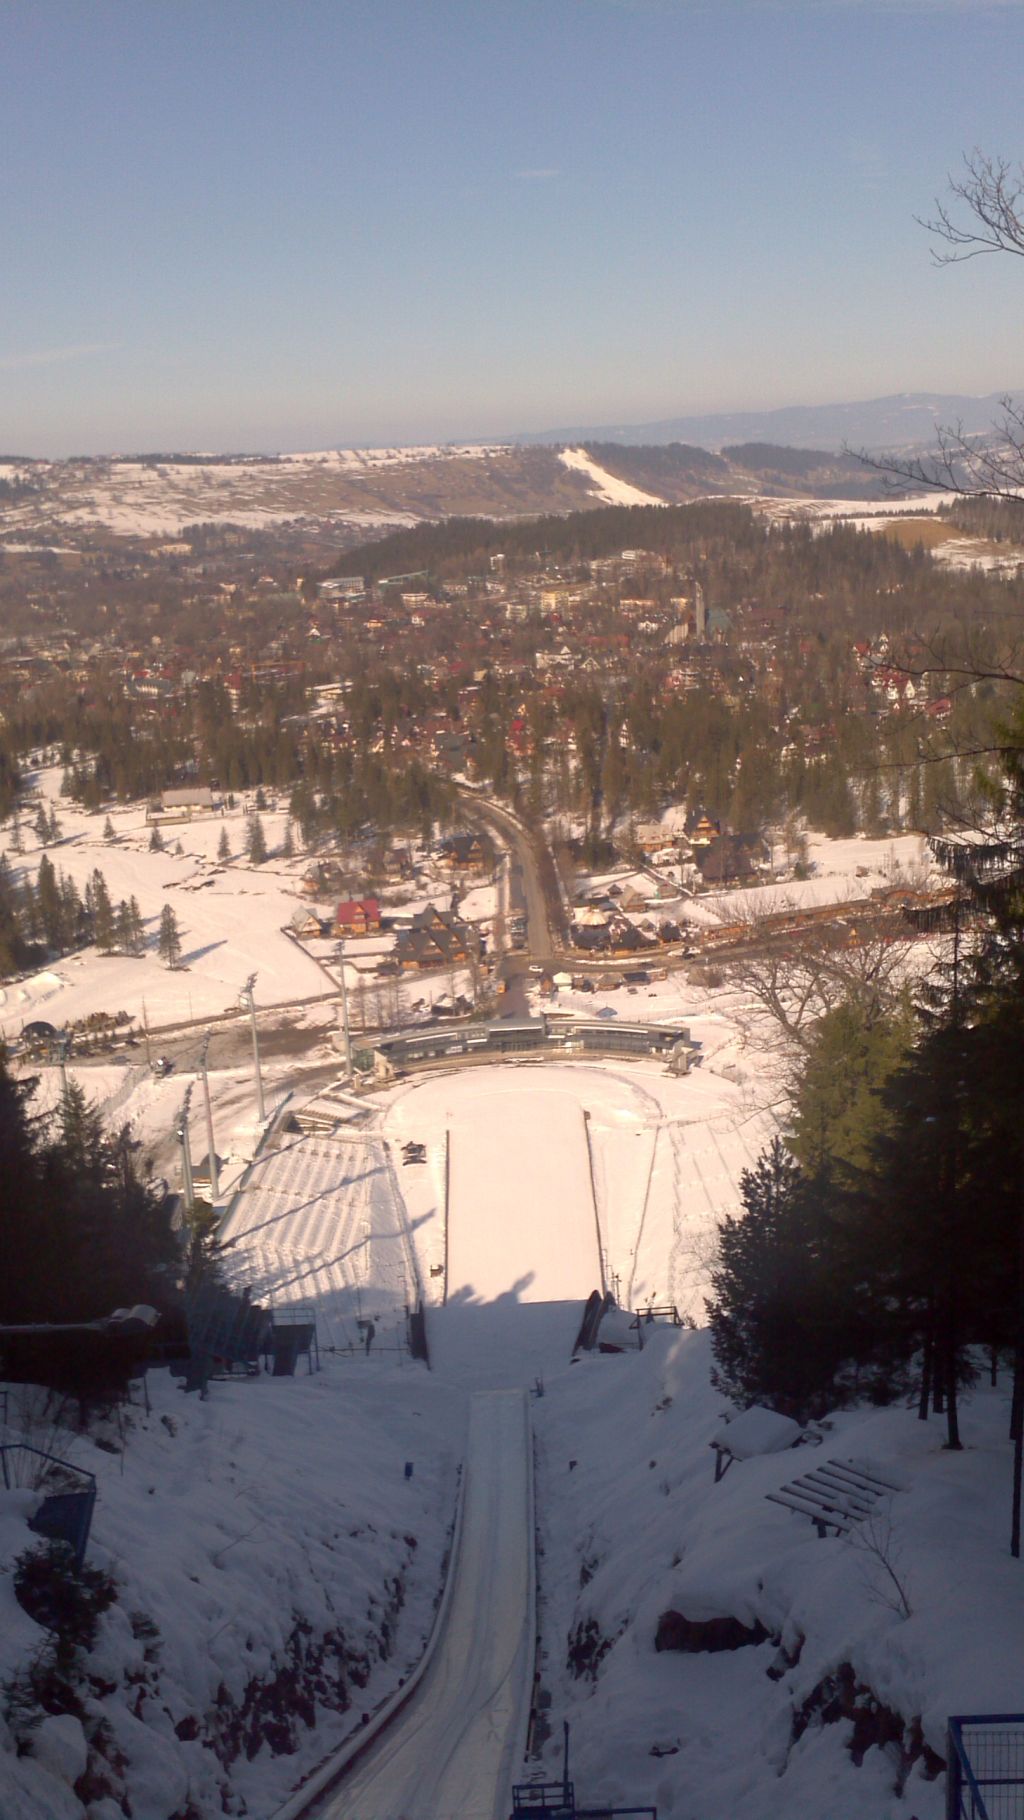 Skocznia narciarska w Zakopanem - Wielka Krokiew 1